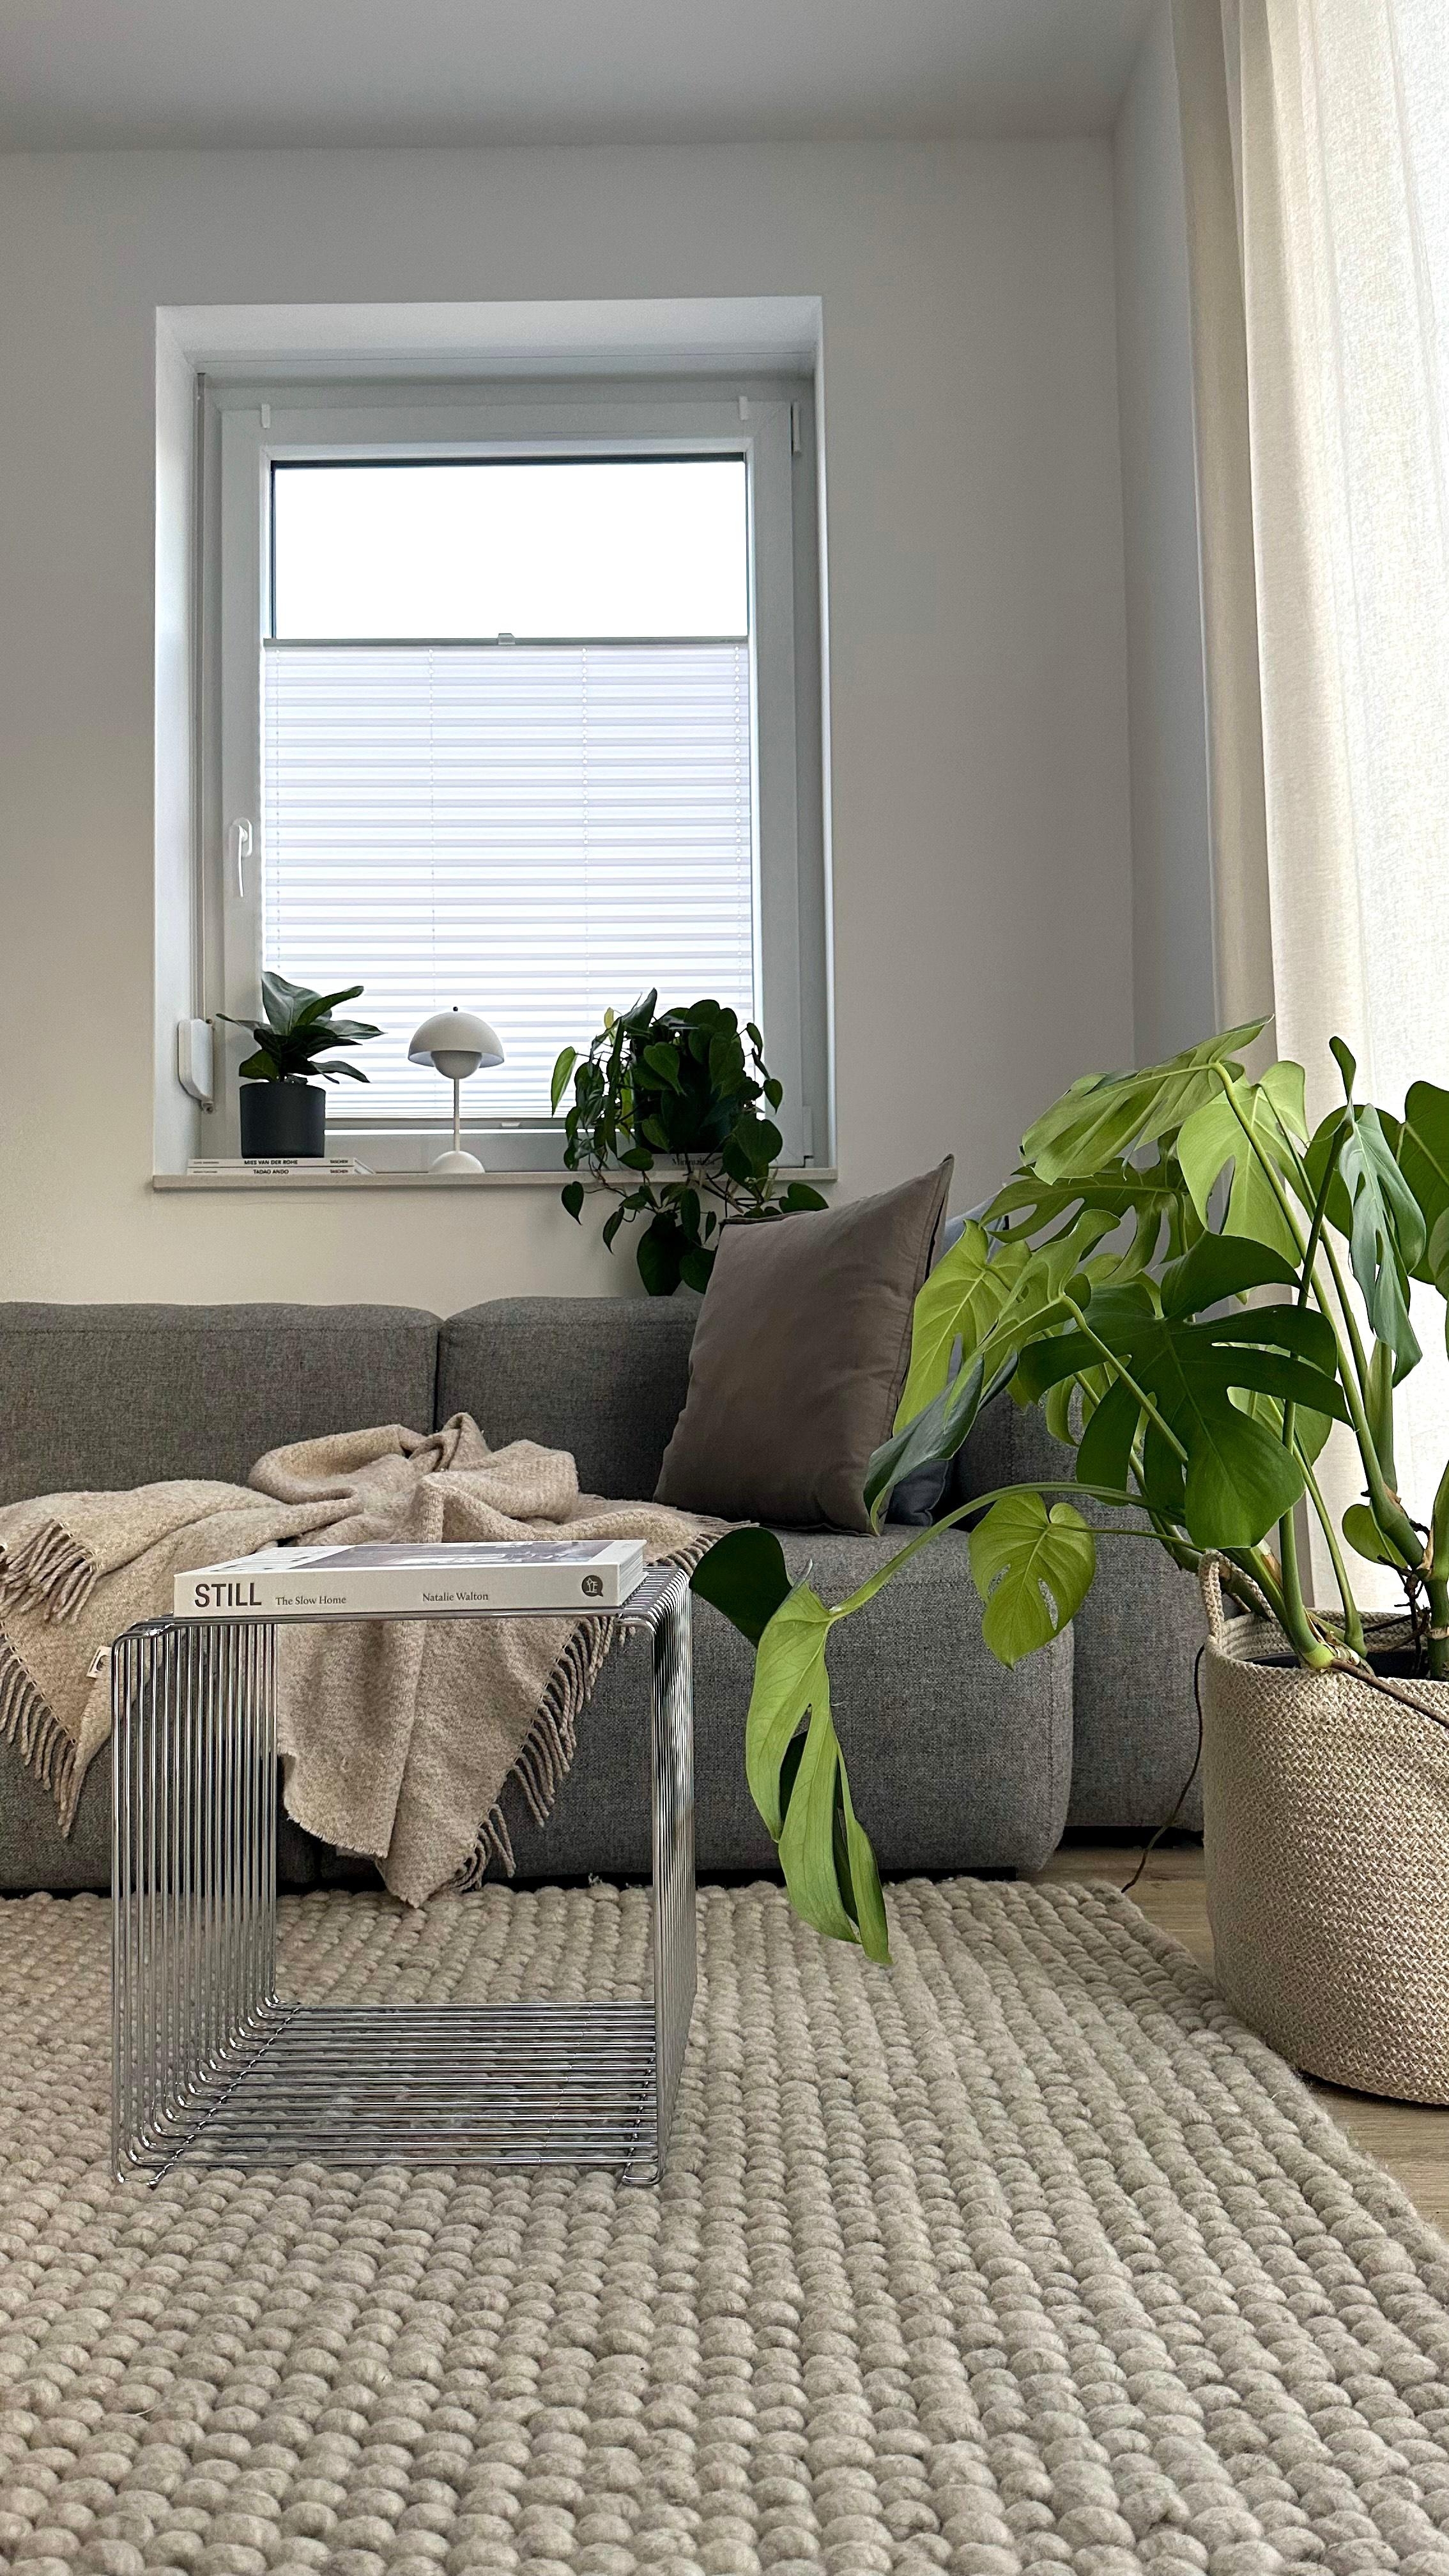 #wohnzimmer #sofa #couch #couchliebt #sofaecke #grauessofa #couchtisch #dekoideen #pflanzen #pflanzenliebe 🌿